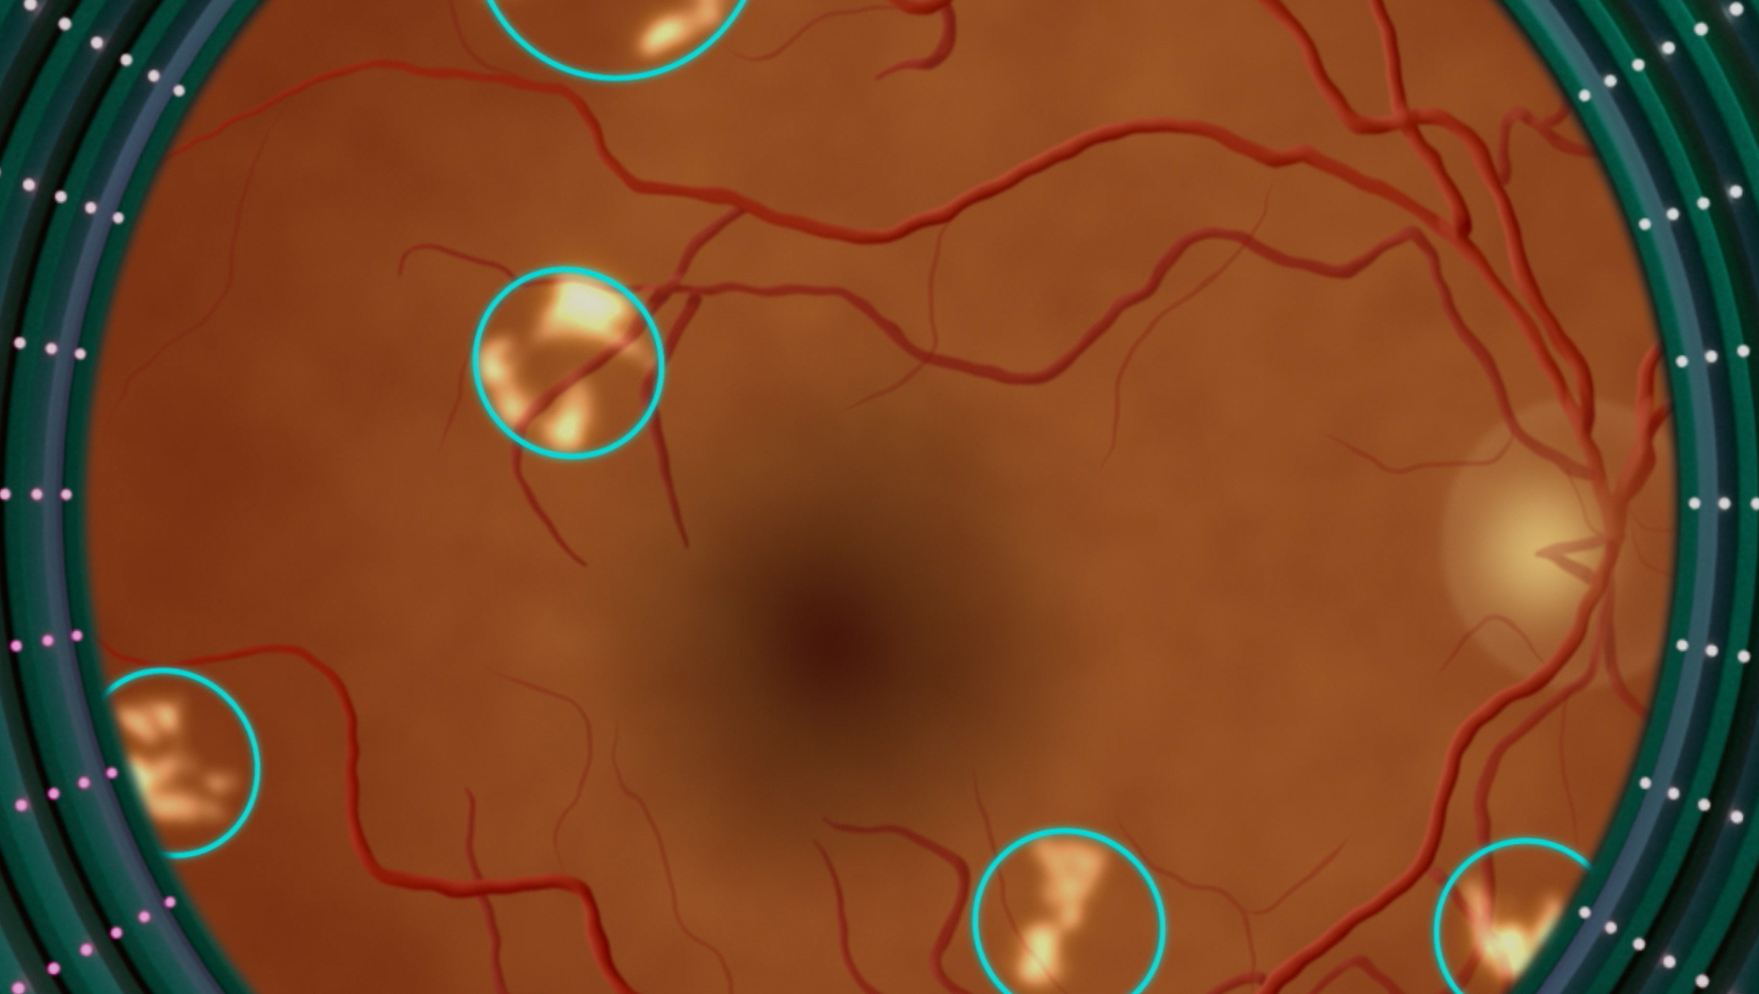 Uma imagem aproximada de uma retina com manchas brancas circuladas.